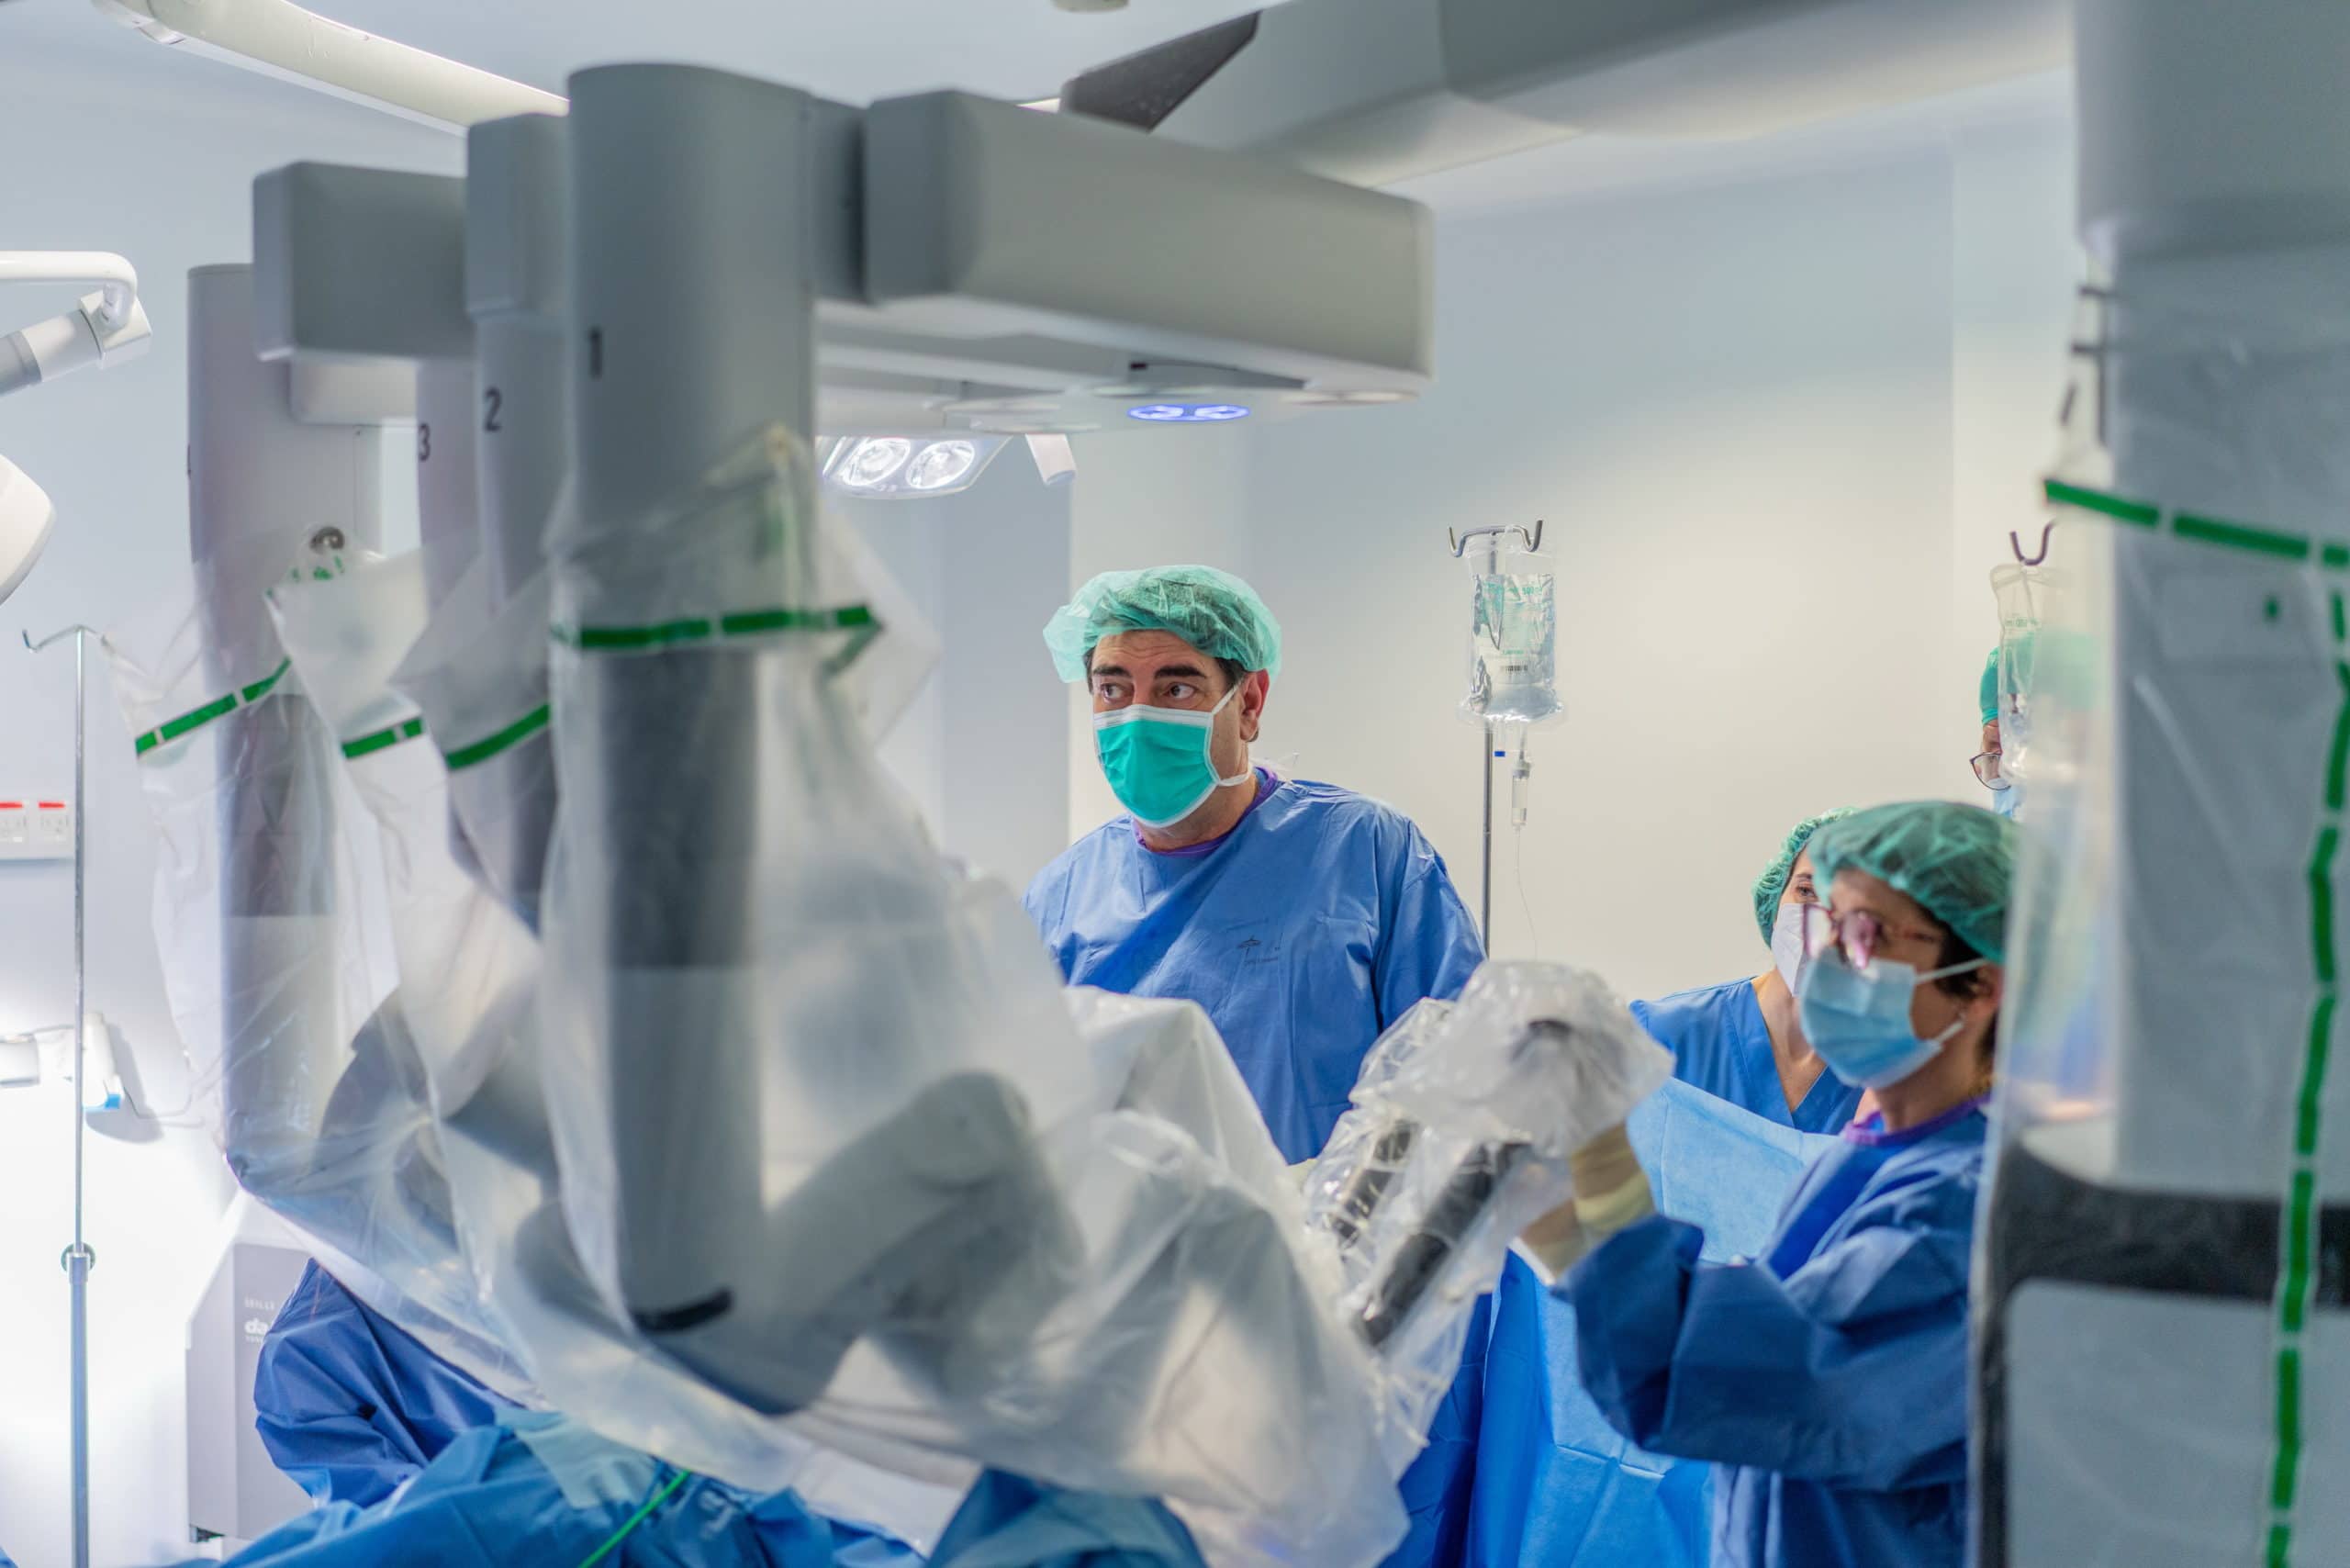 El hospital Campo Grande, de Valladolid, realiza una operación ‘robótica’ de oncología ginecológica